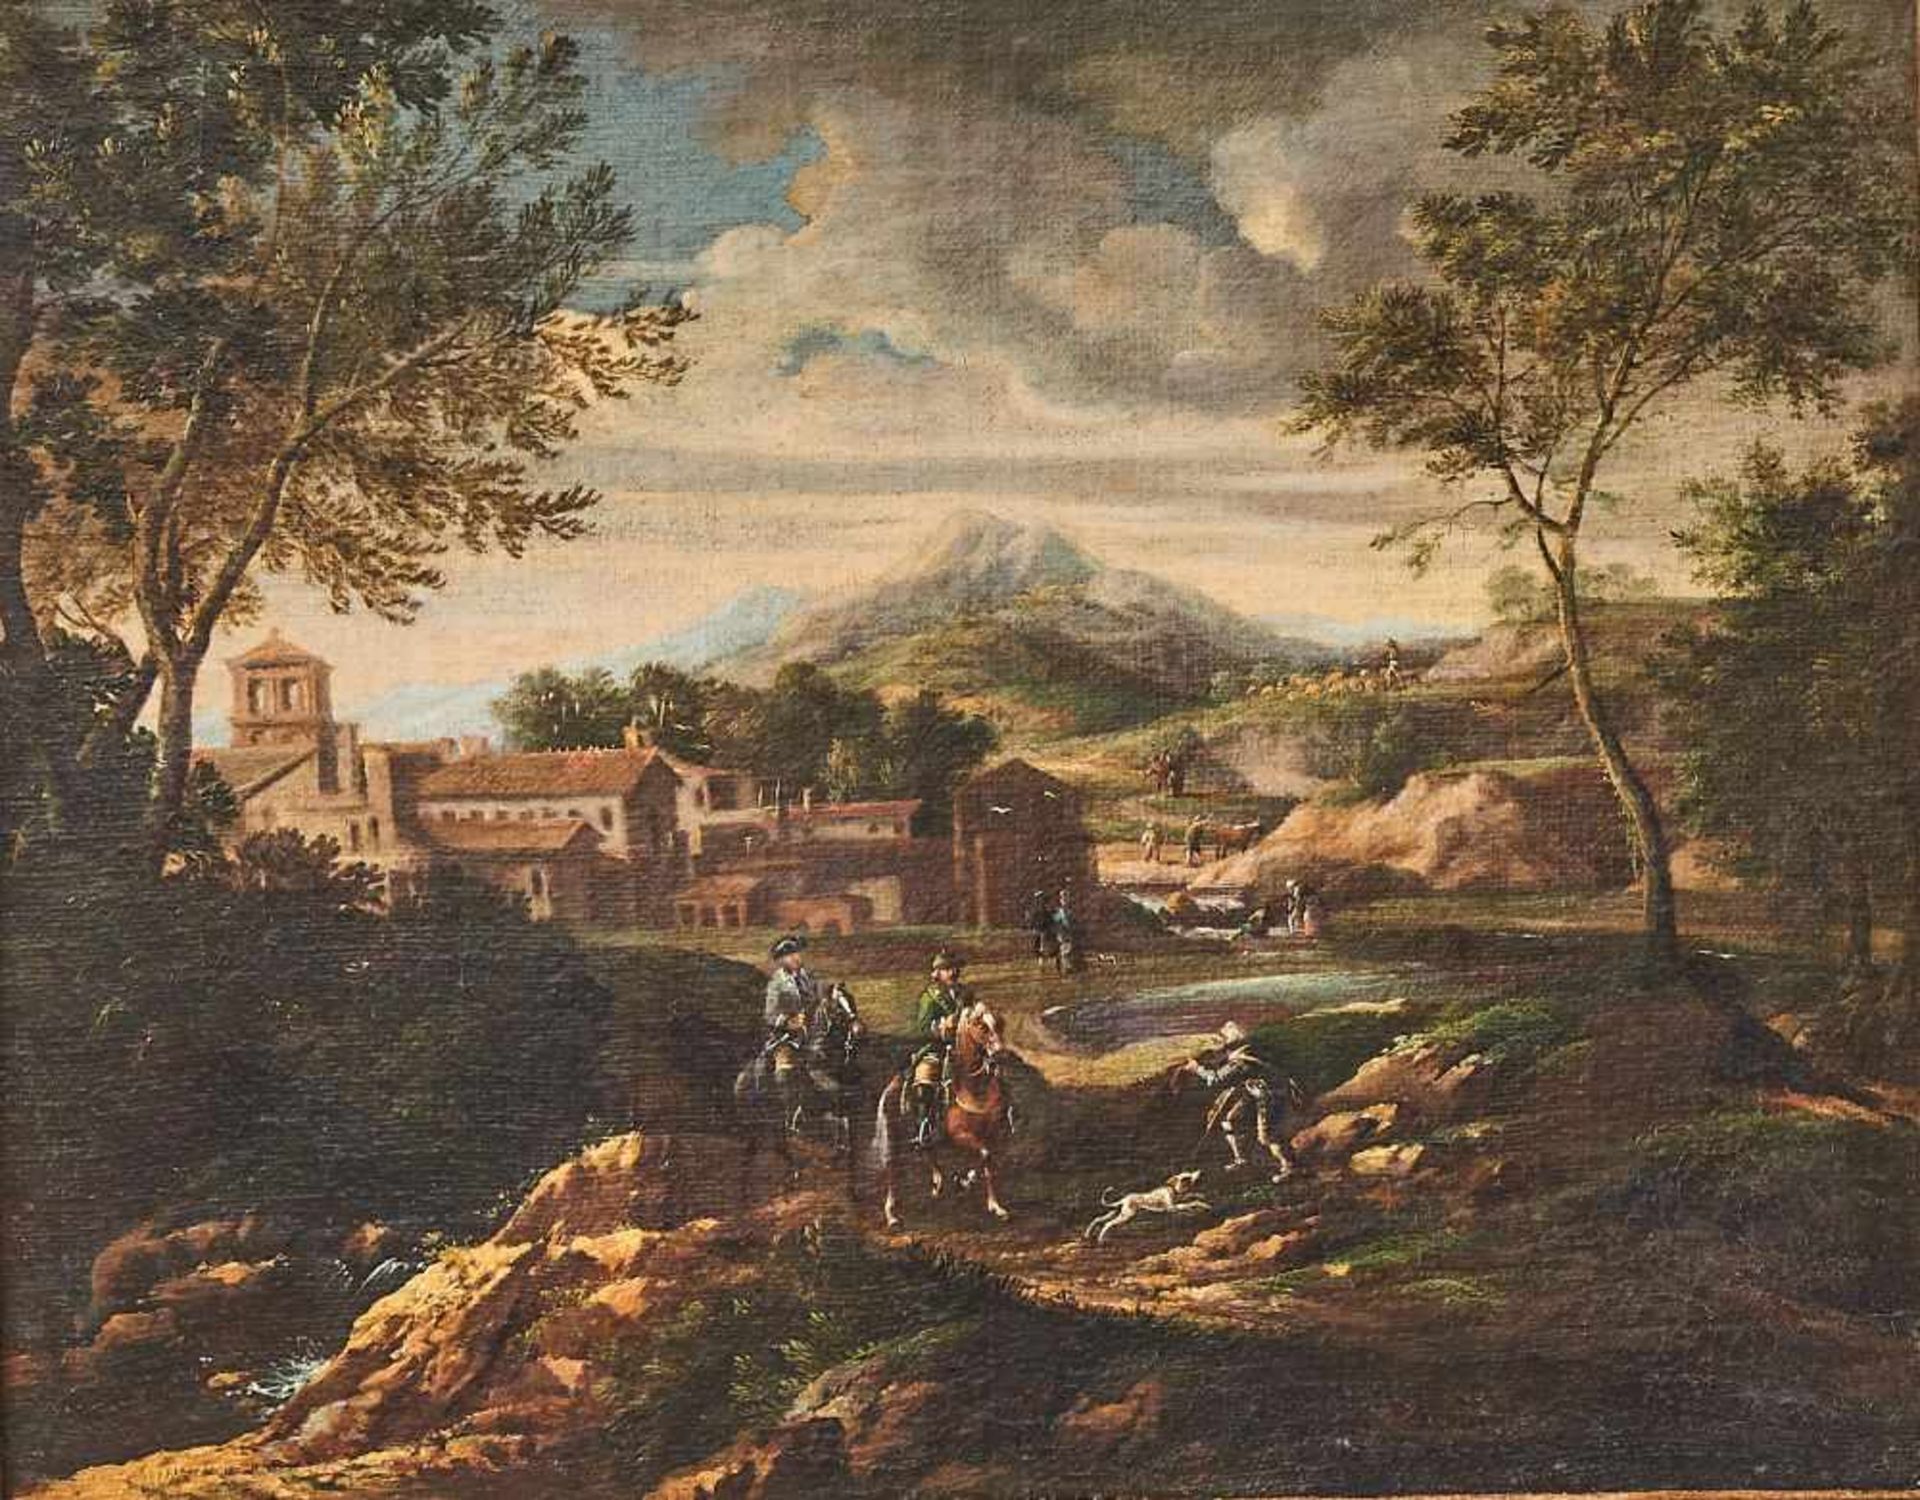 Burglandschaft mit ReiternWillem Gerritsz zugeschr. Van BemmelÖl auf Leinwand, gerahmt. 49 x 61